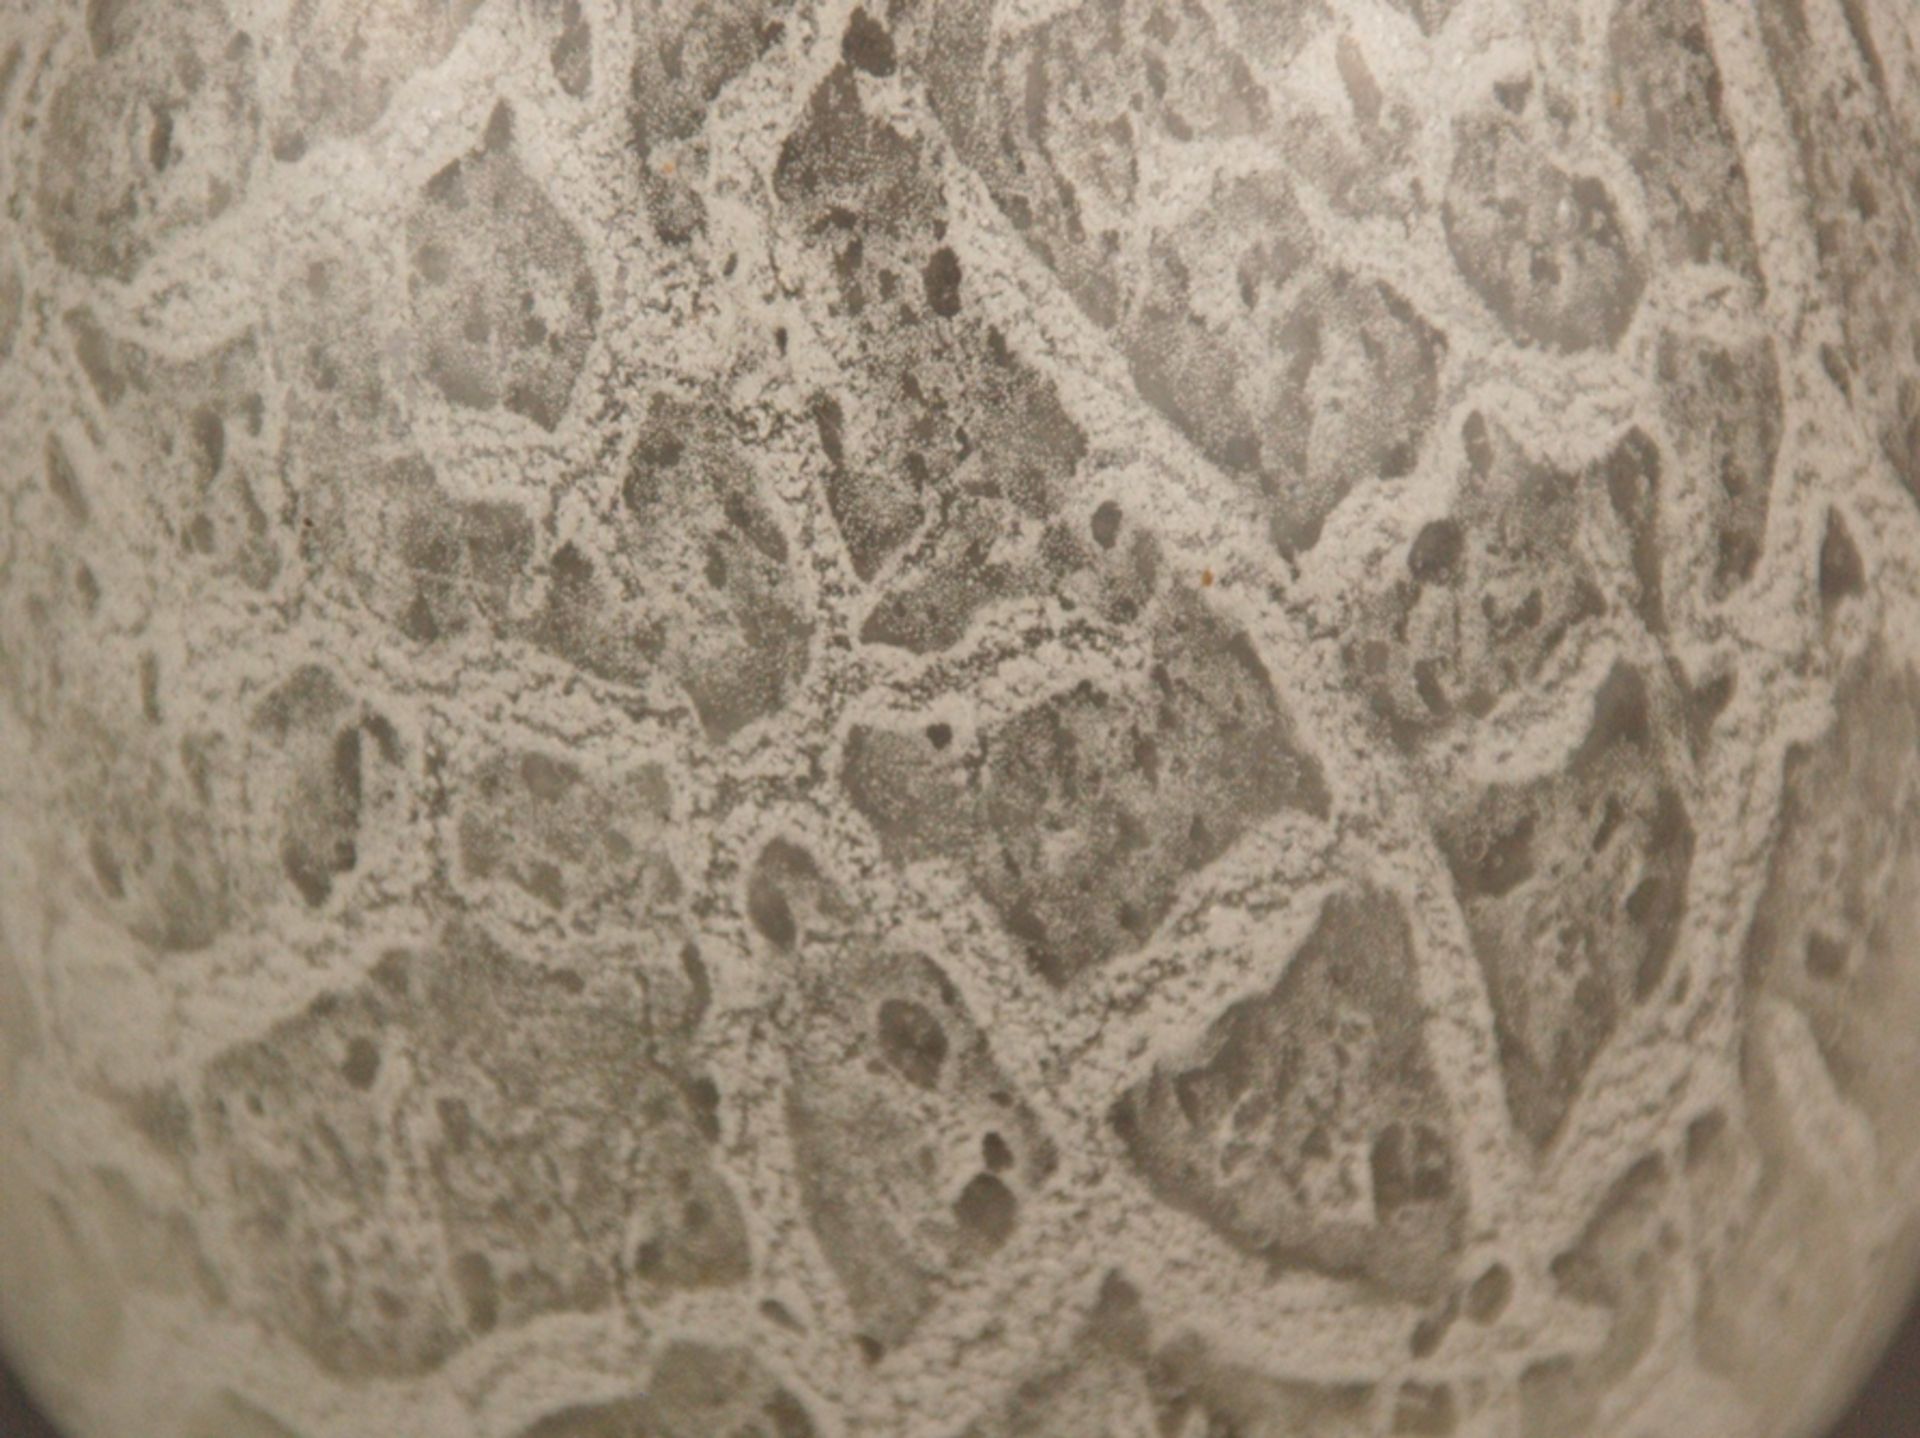 Glasvase - wohl WMF Ikora, Klarglas mit weißen netzartigen Pulvereinschmelzunge - Bild 3 aus 5